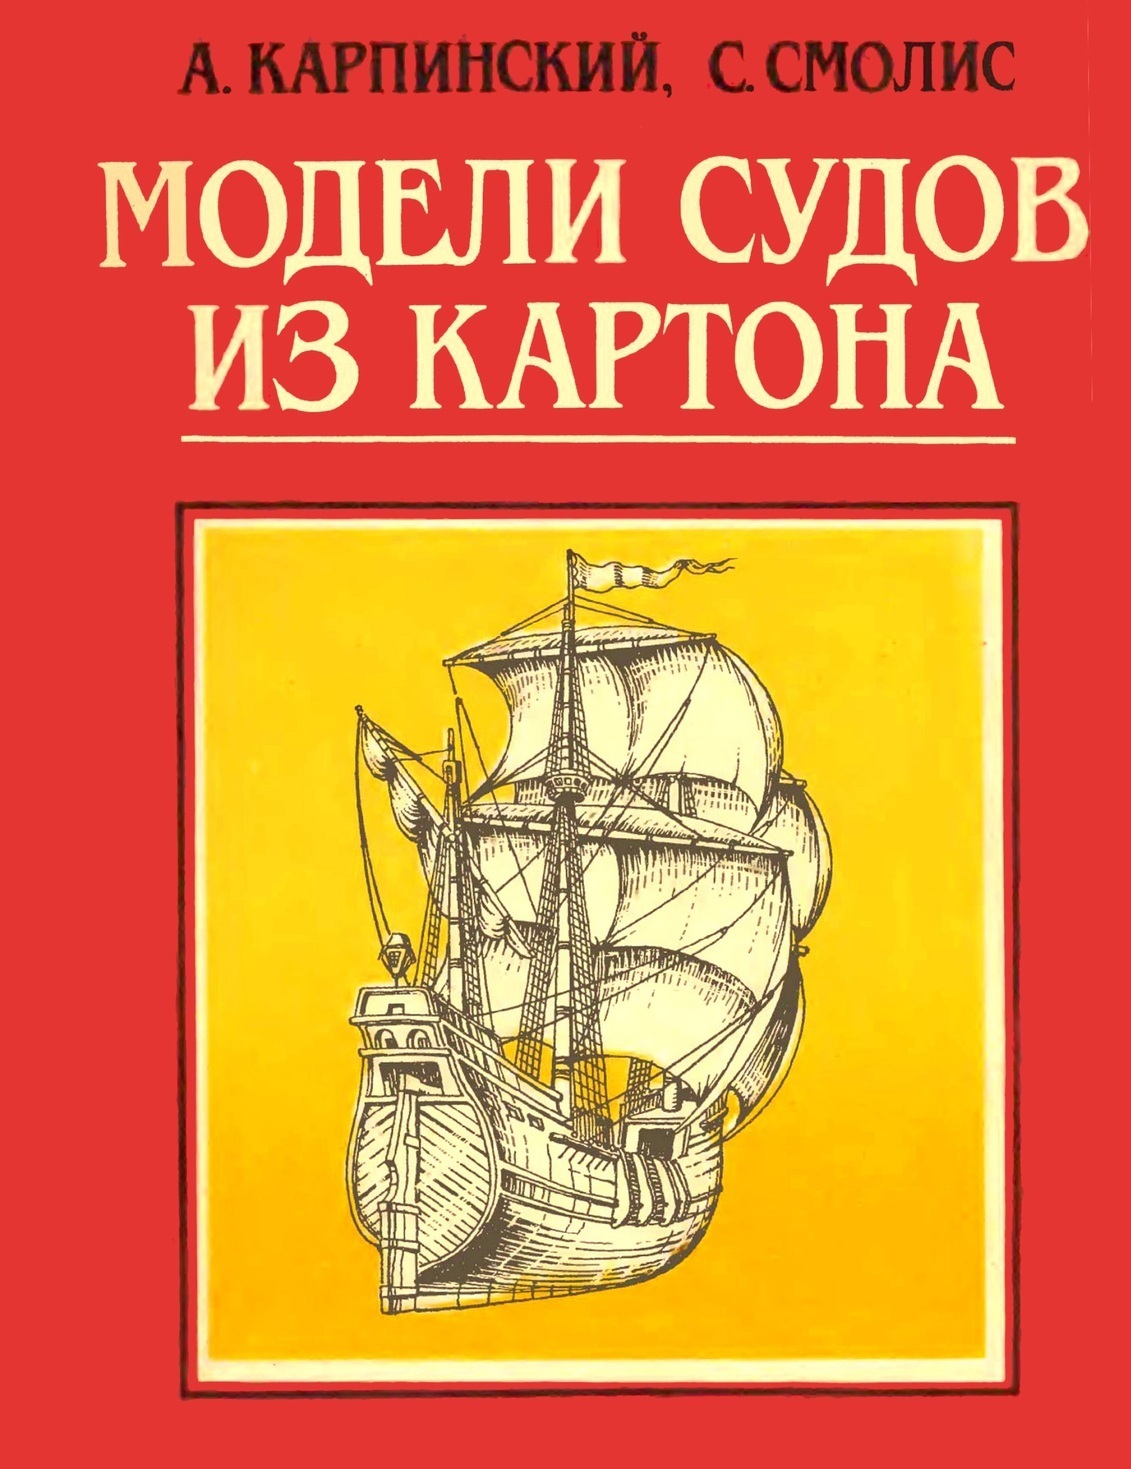 Карпинский А., Смолис С.  Модели судов из картона.